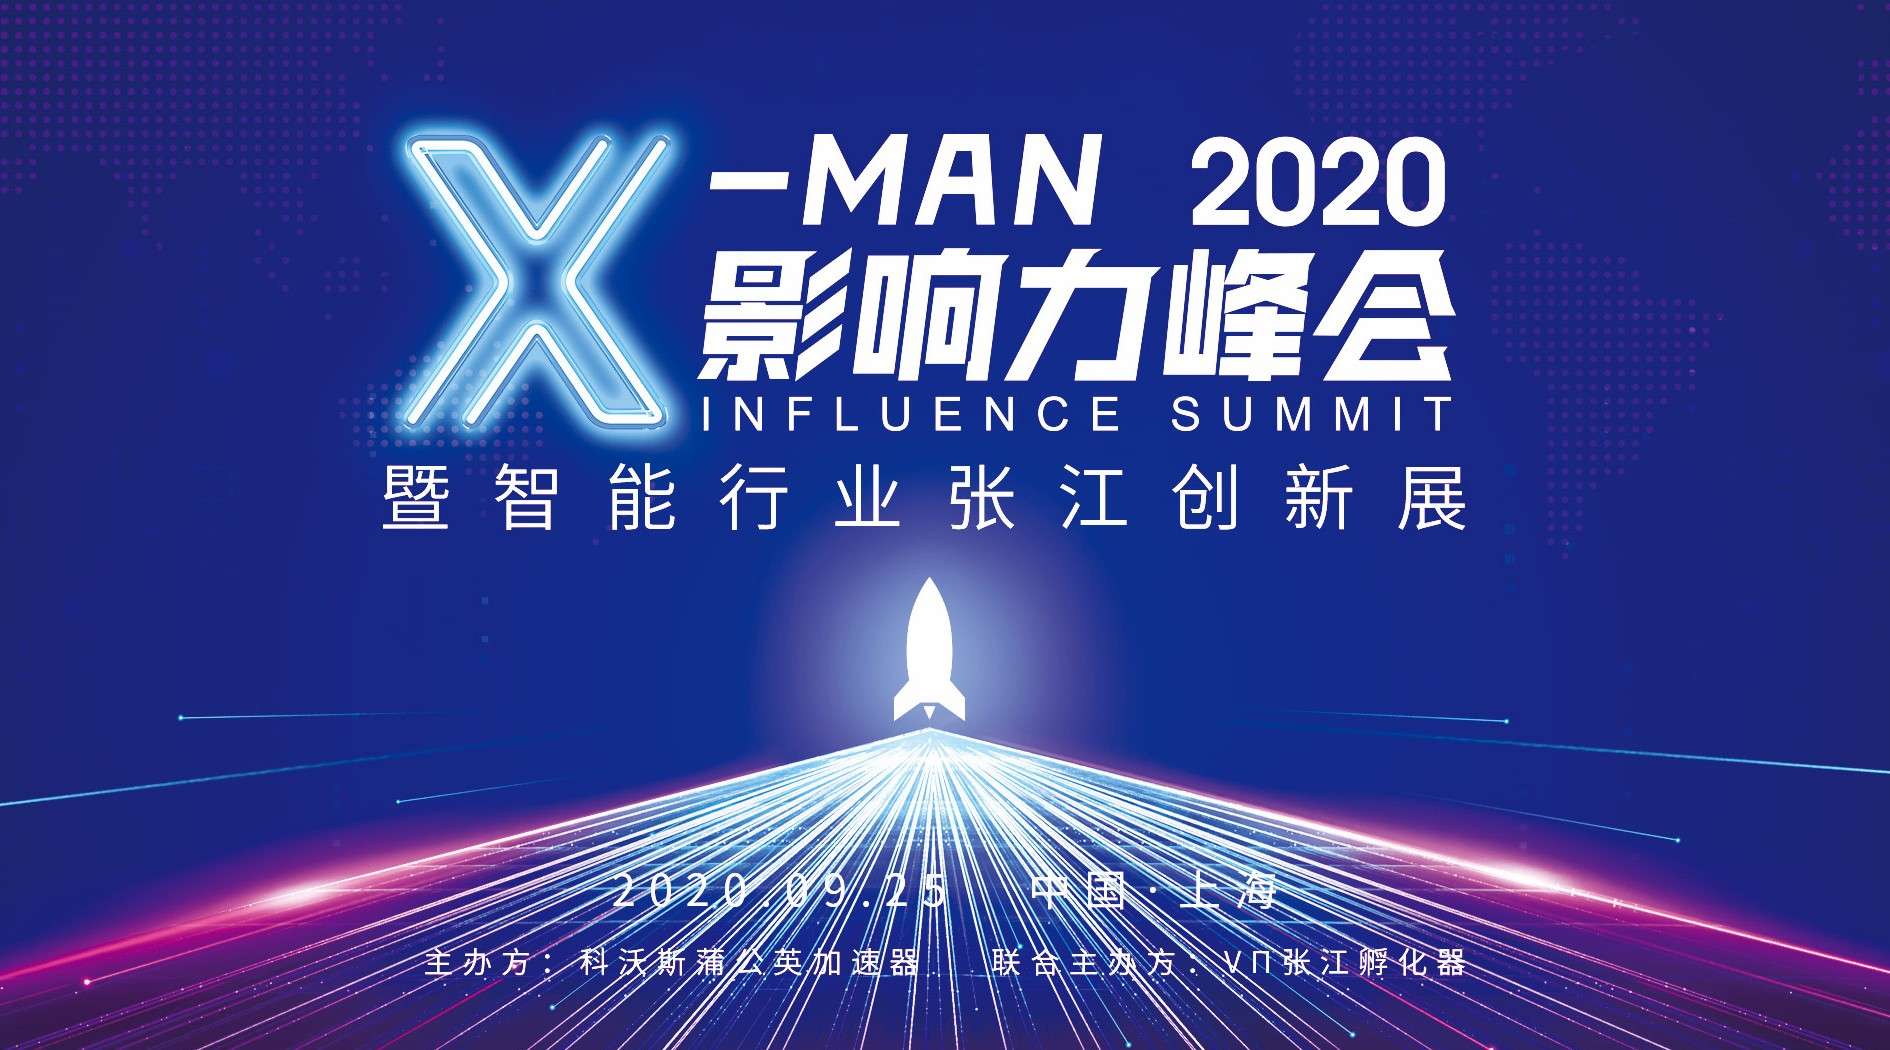 活动快剪 X-MAN影响力峰会20200926